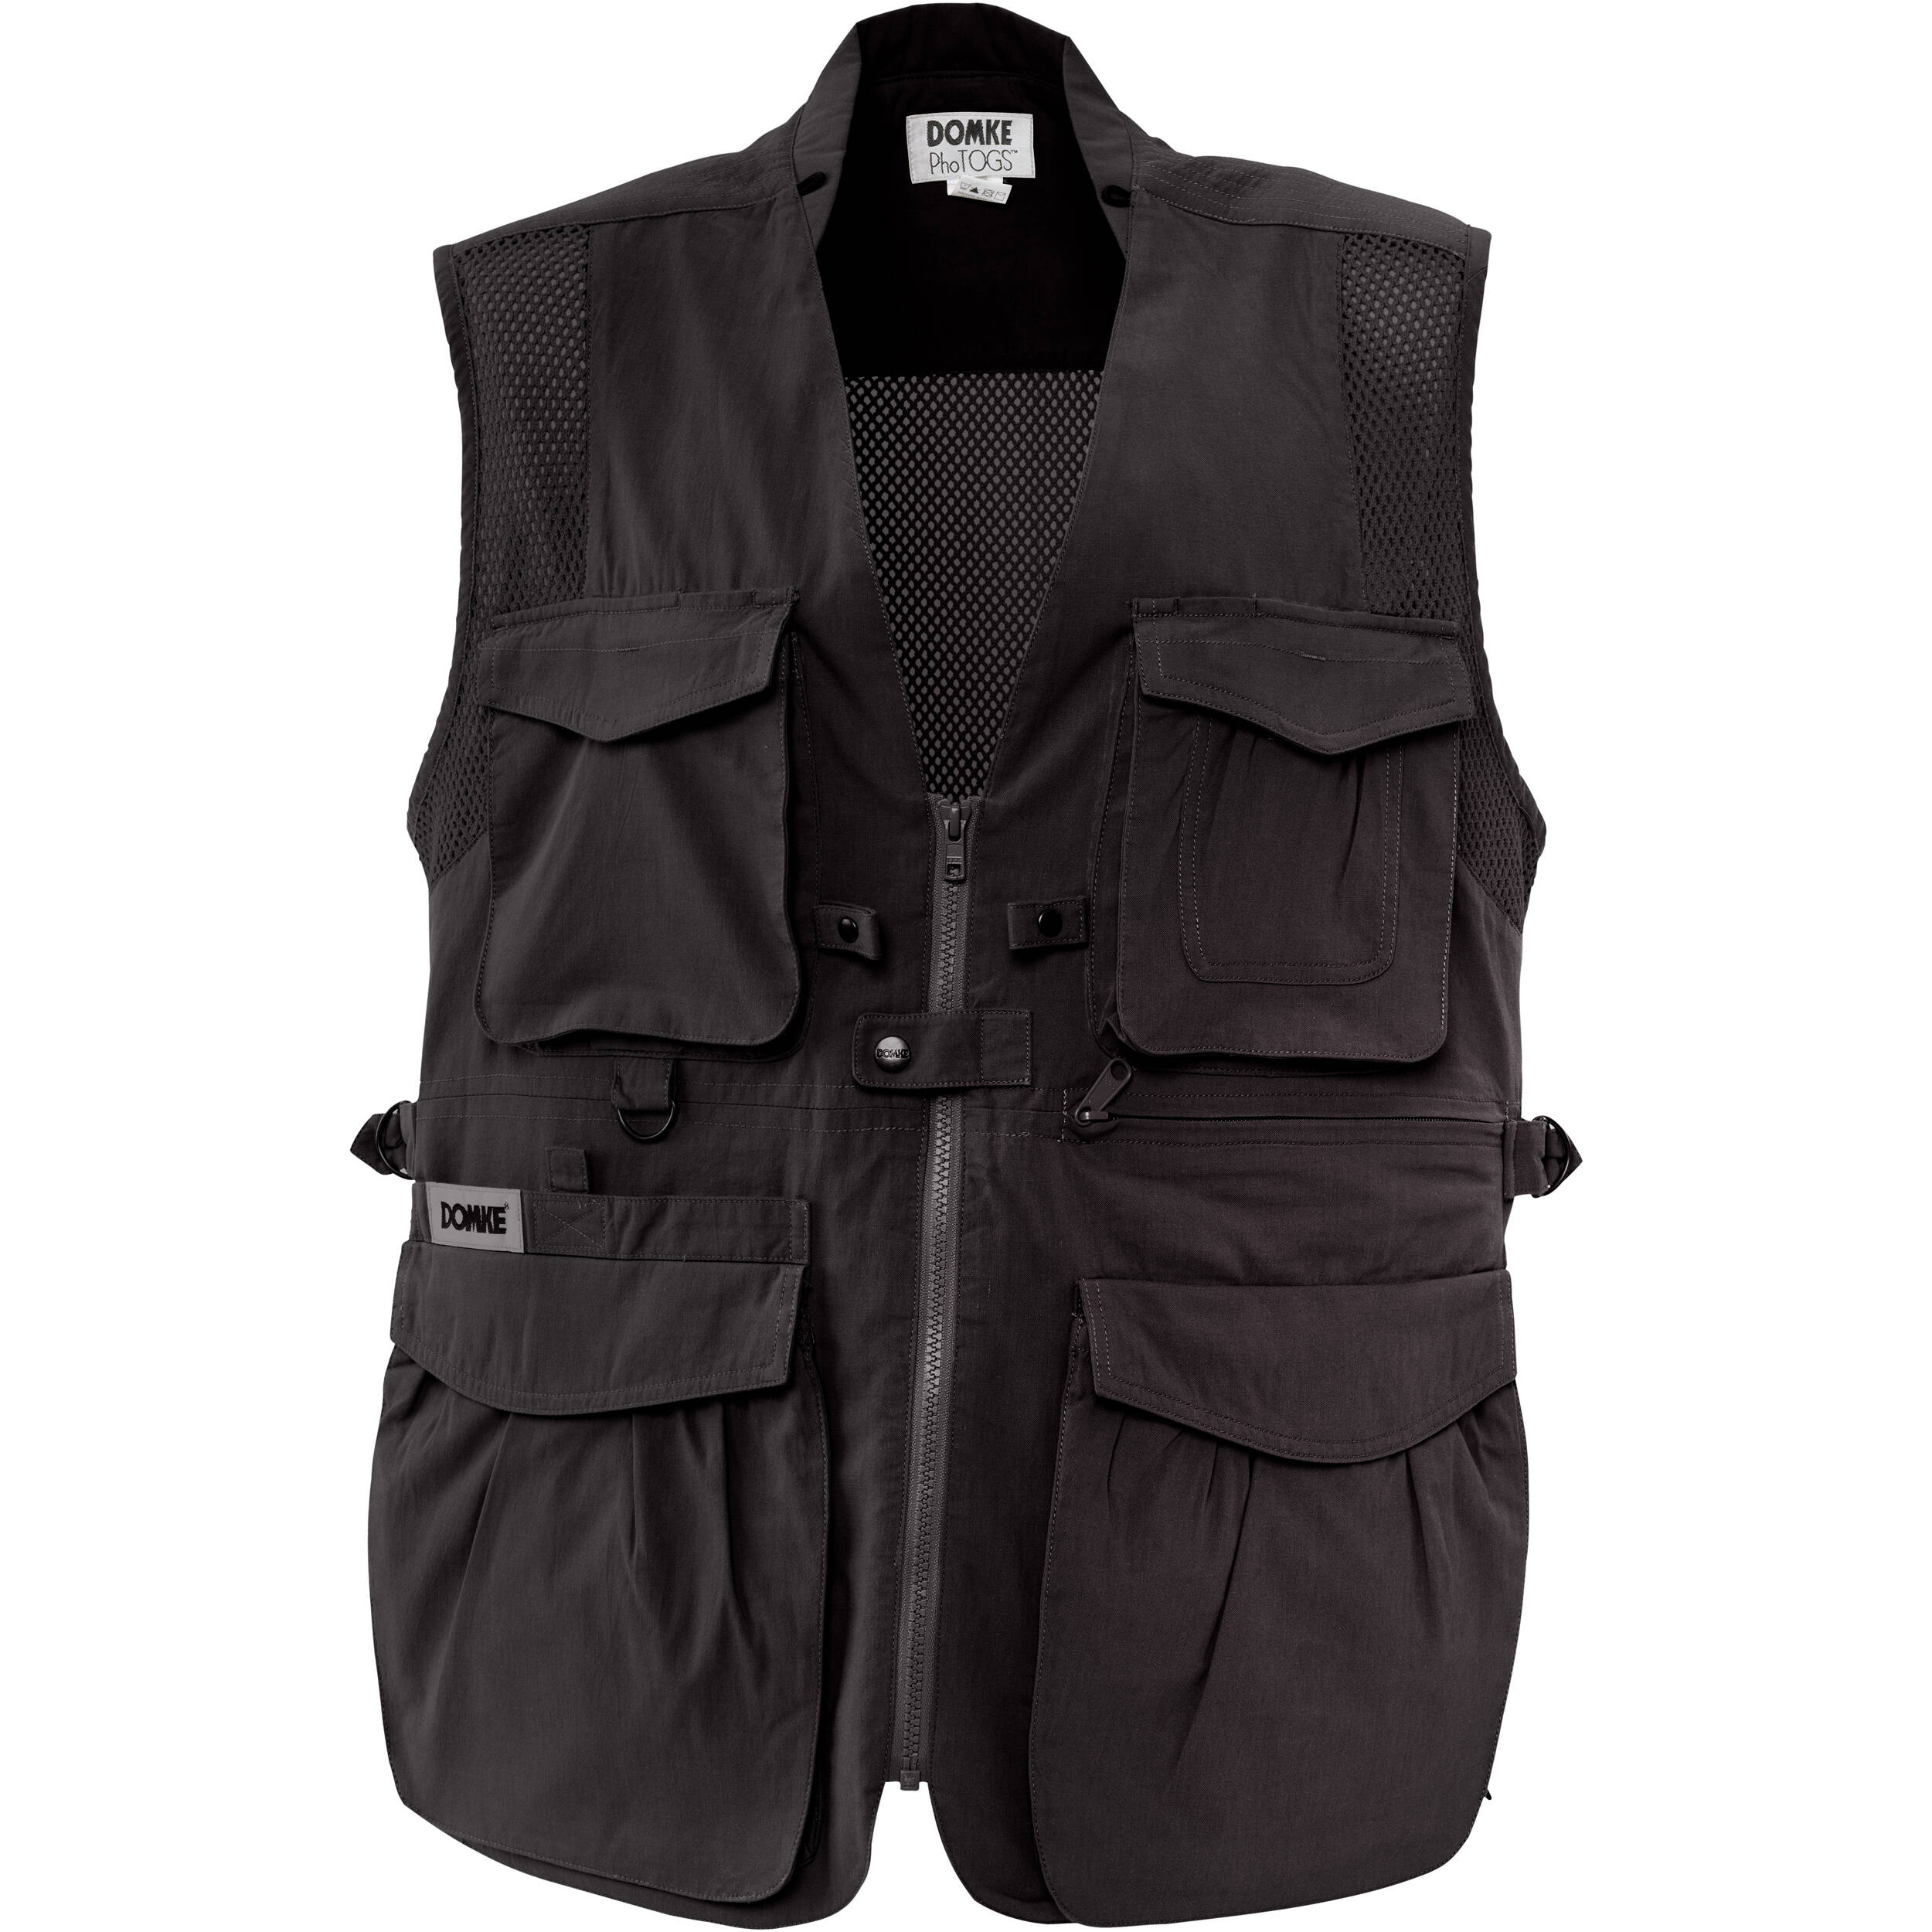 Domke PhoTOGS Vest - Black - XL